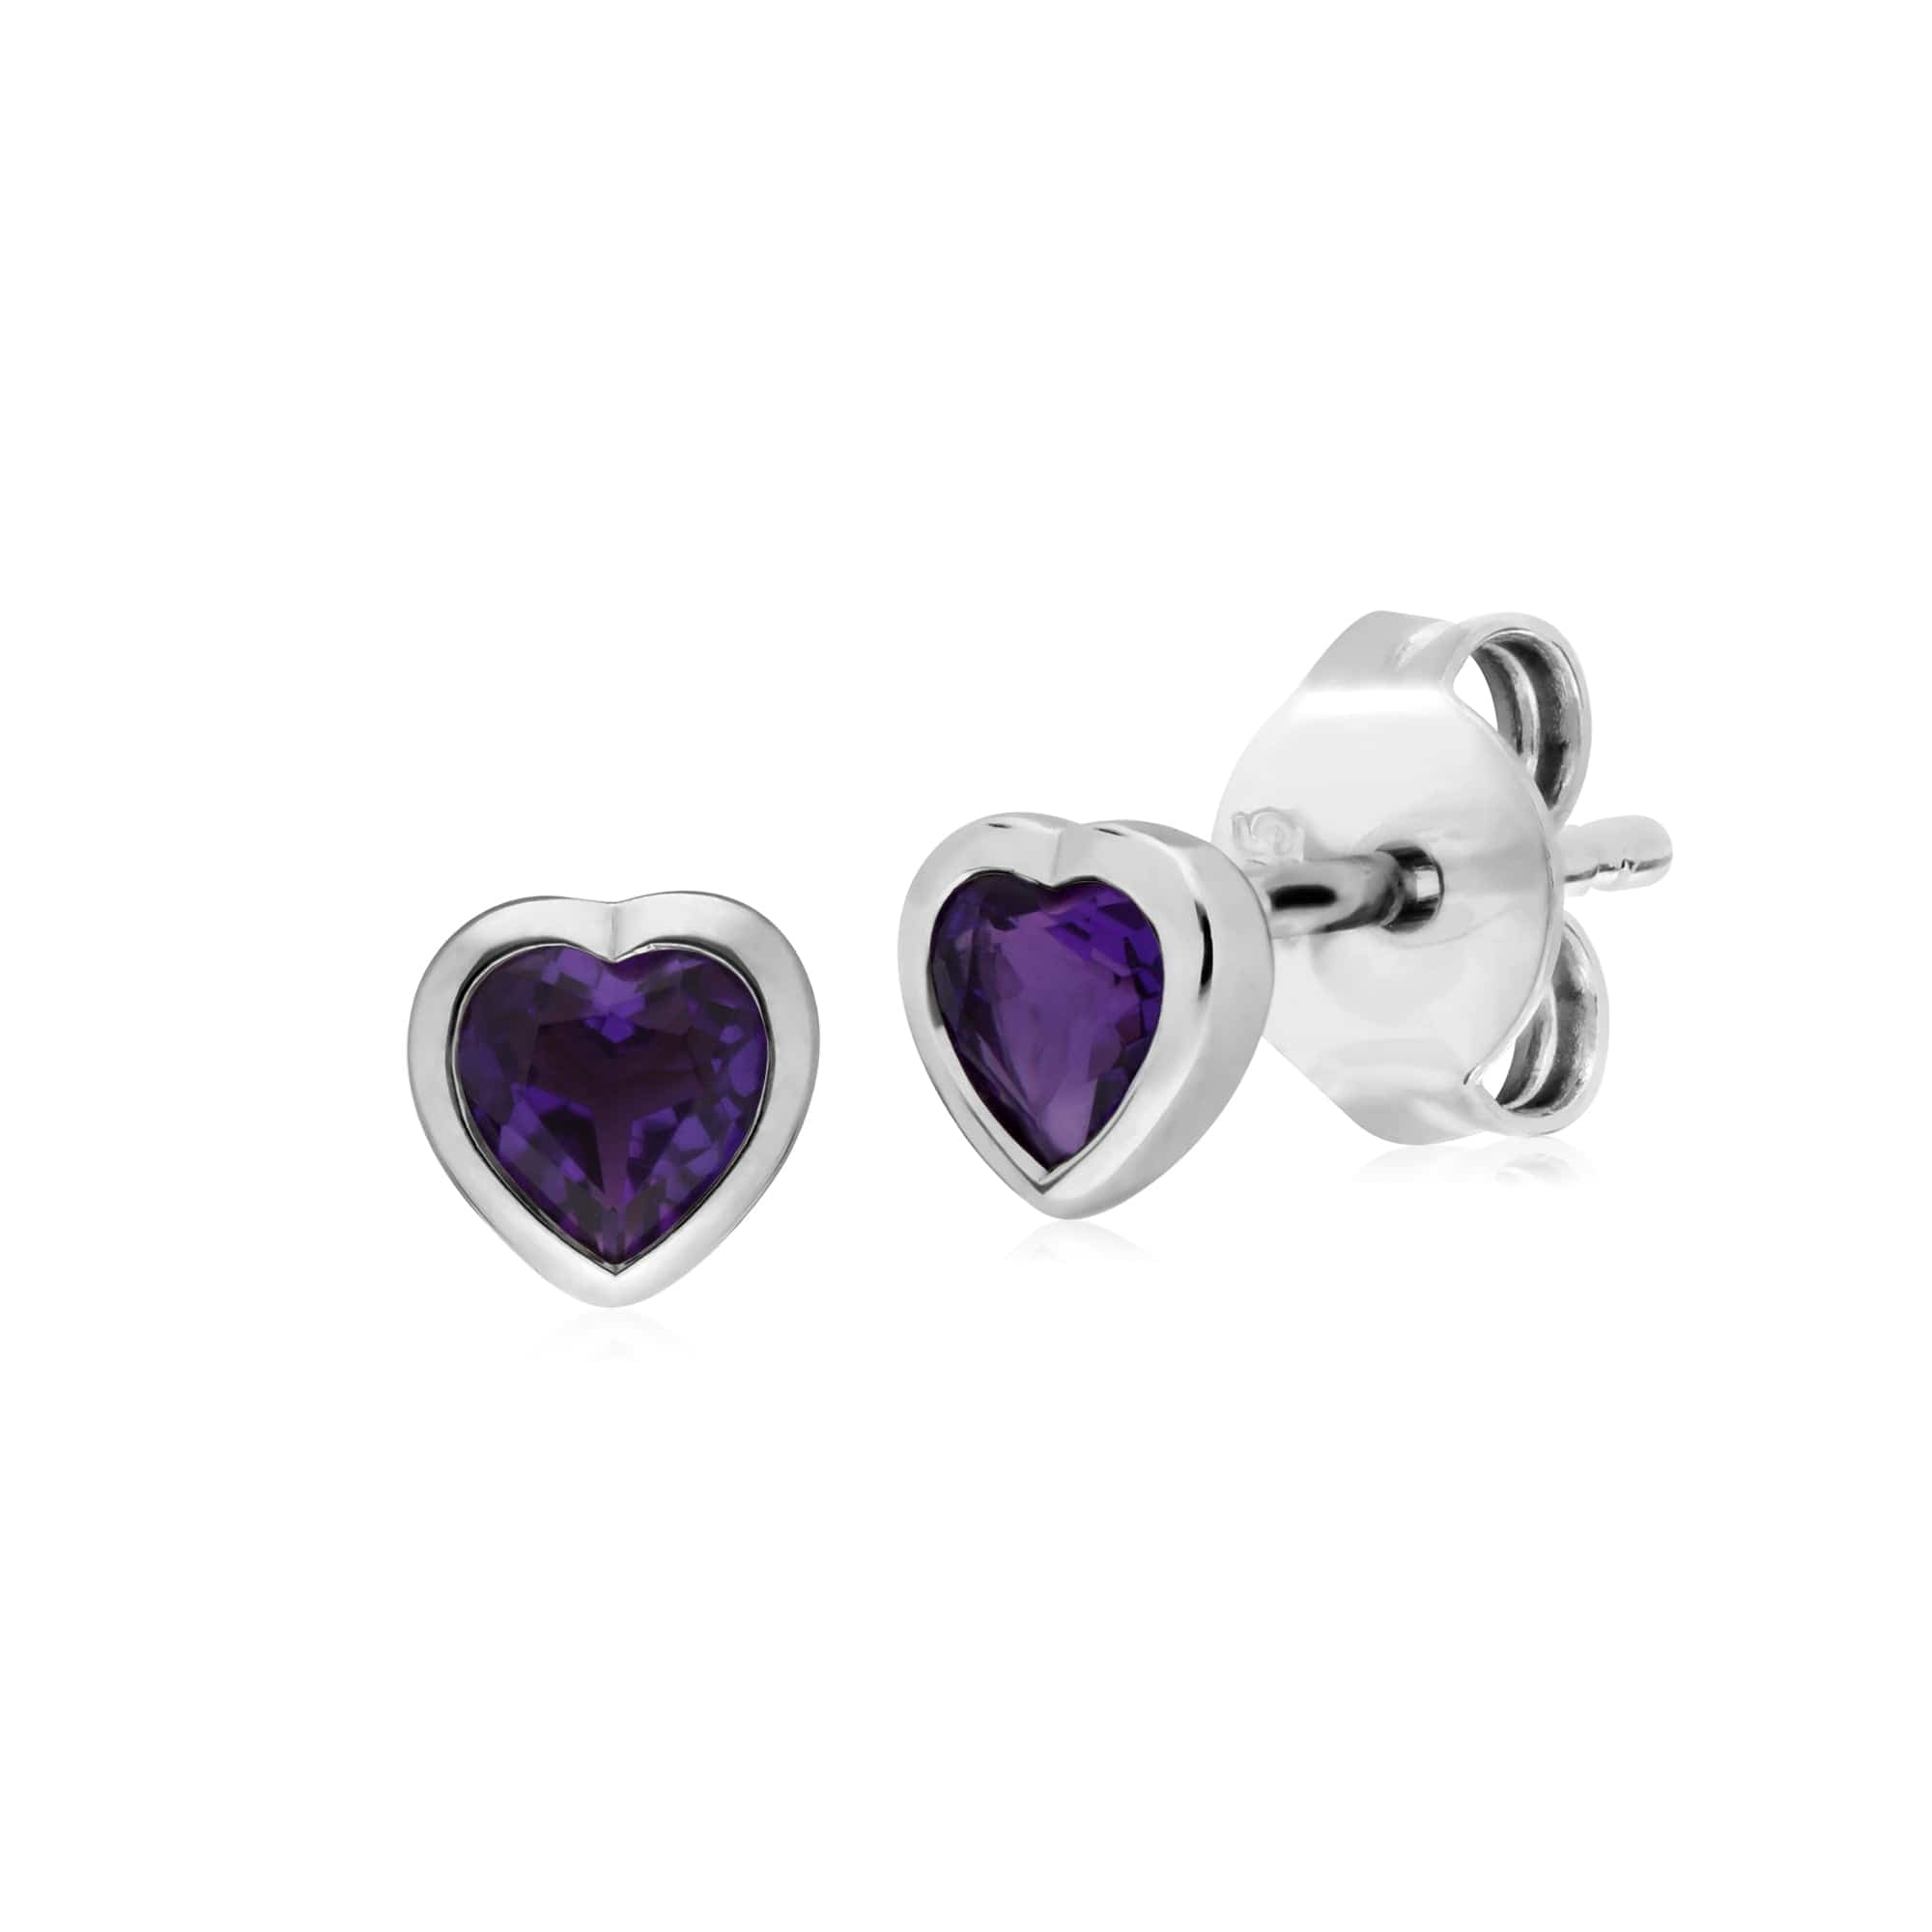 270E026101925-270P028701925 Classic Heart Amethyst Stud Earrings & Pendant Set in 925 Sterling Silver 2